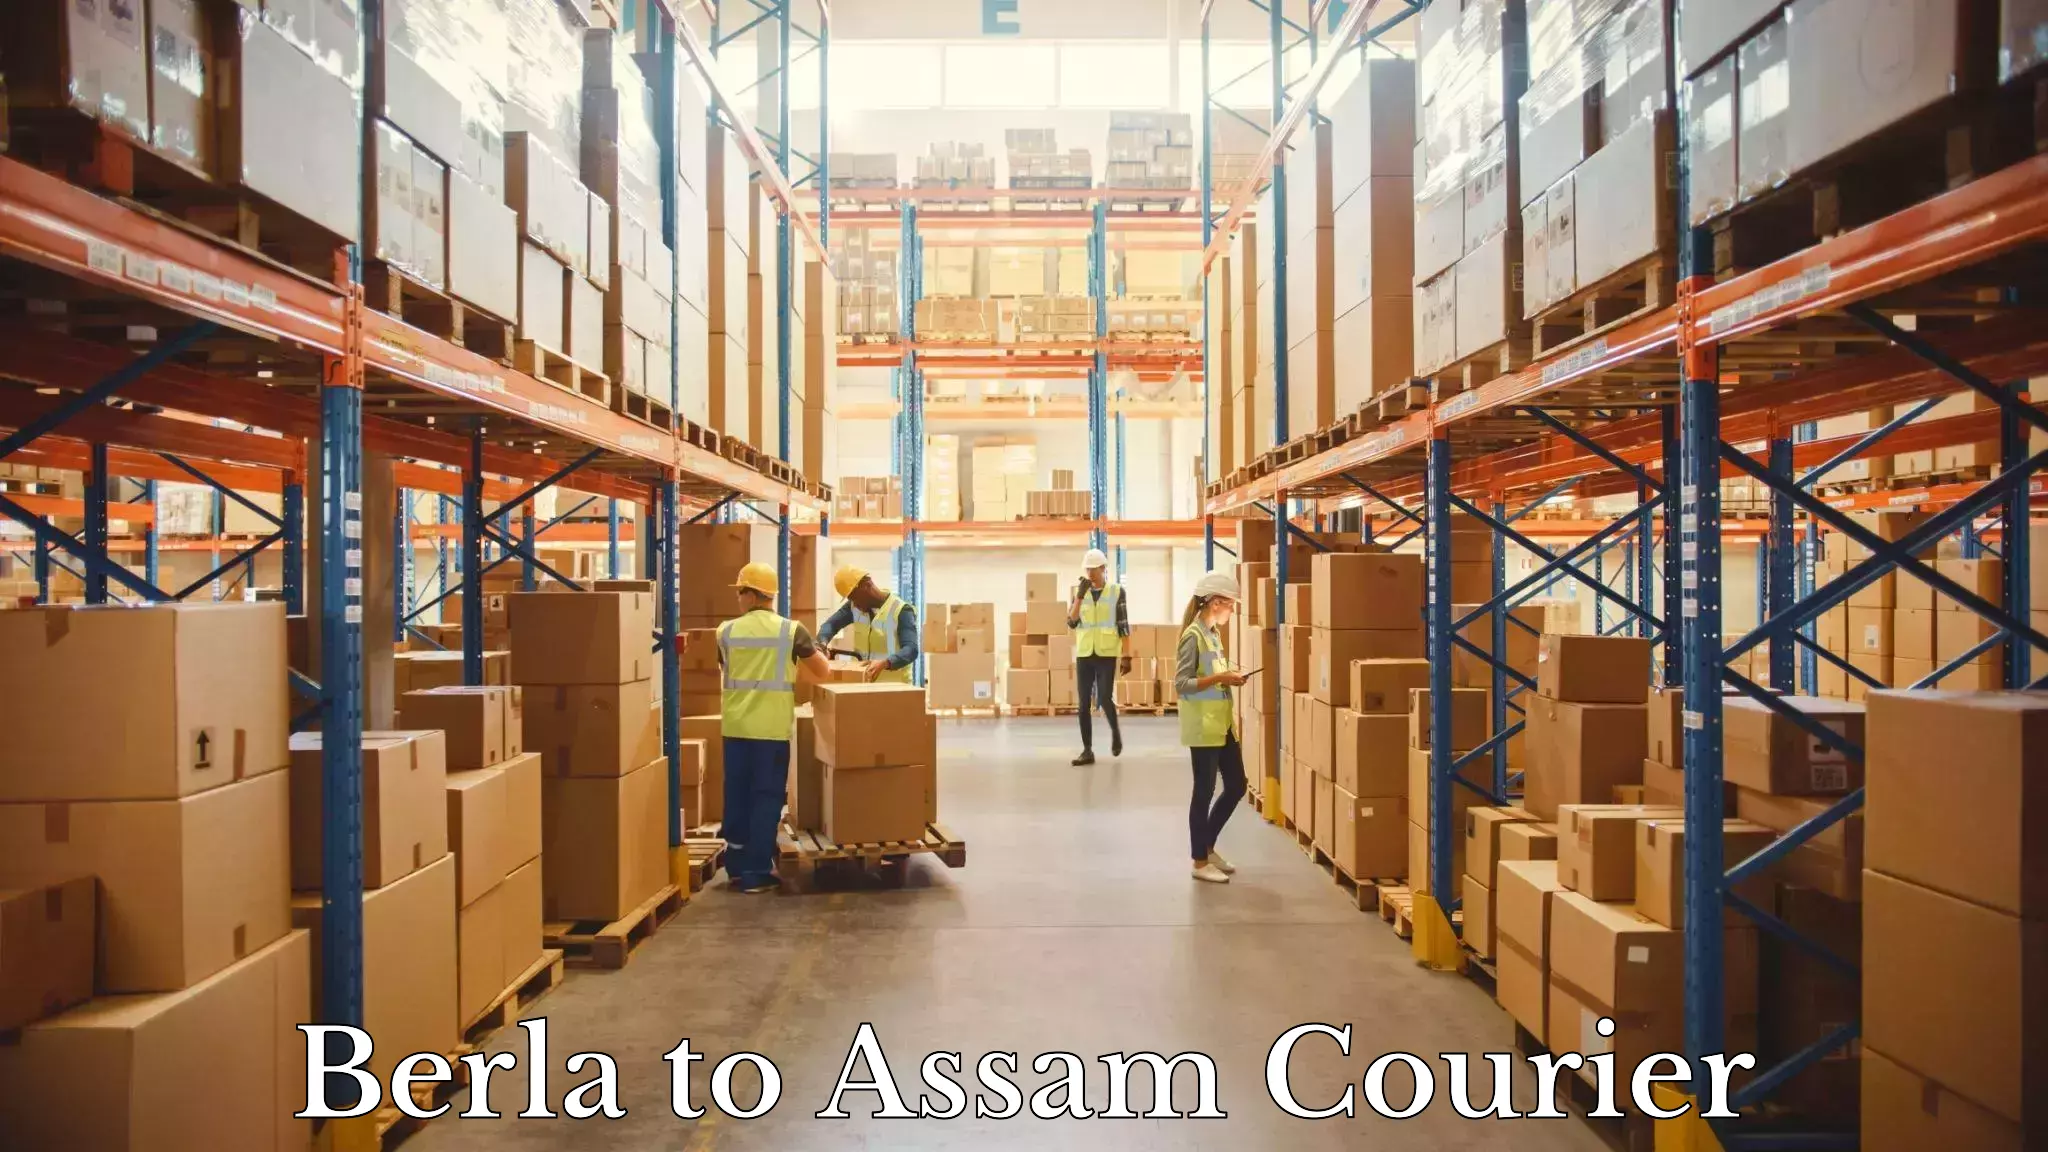 High-speed parcel service Berla to Assam